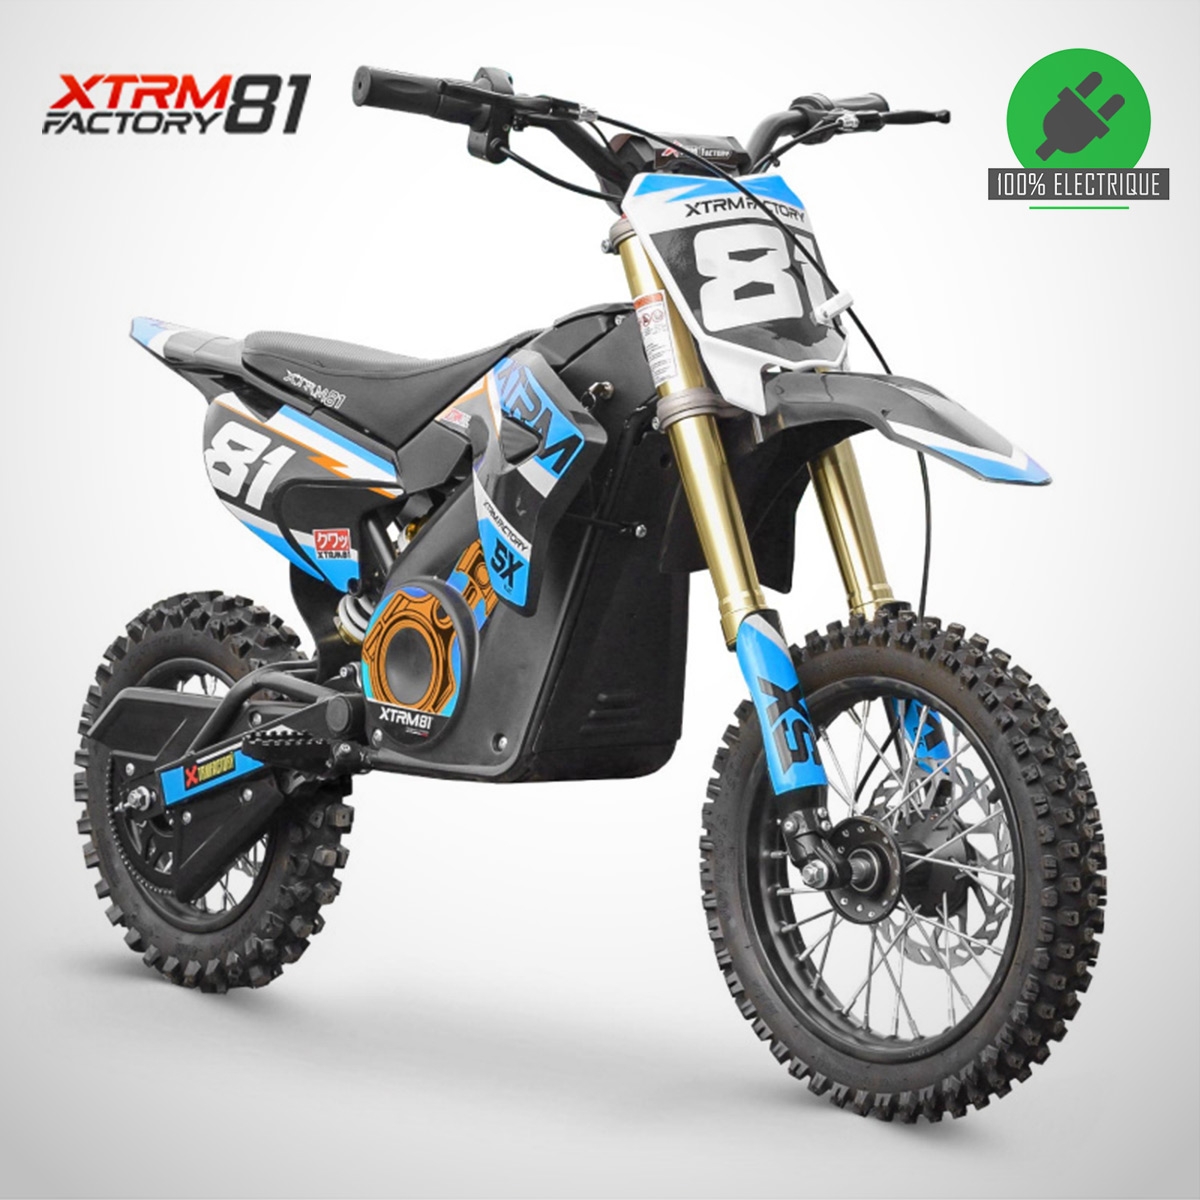 Motocross électrique enfant SX 1100W XTREM81 12/10 Bleu